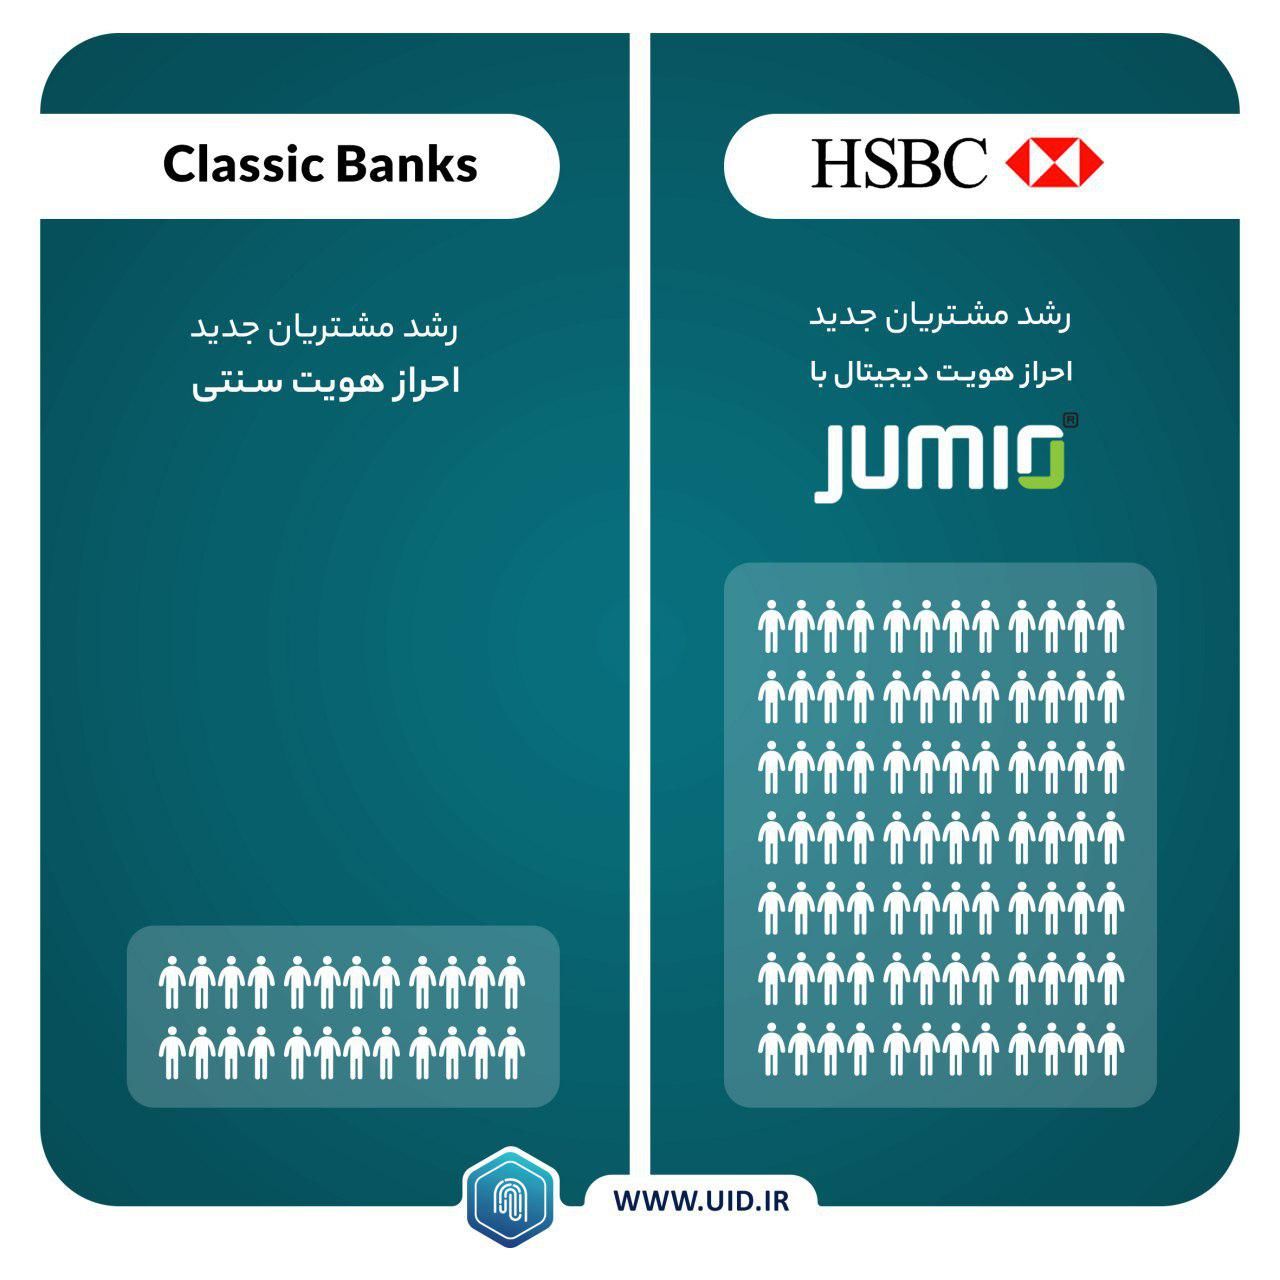 بانک HSBC با بهره گیری از پردازش تصویر Face Recognition چگونه مشتریان جدید را جذب می کند؟